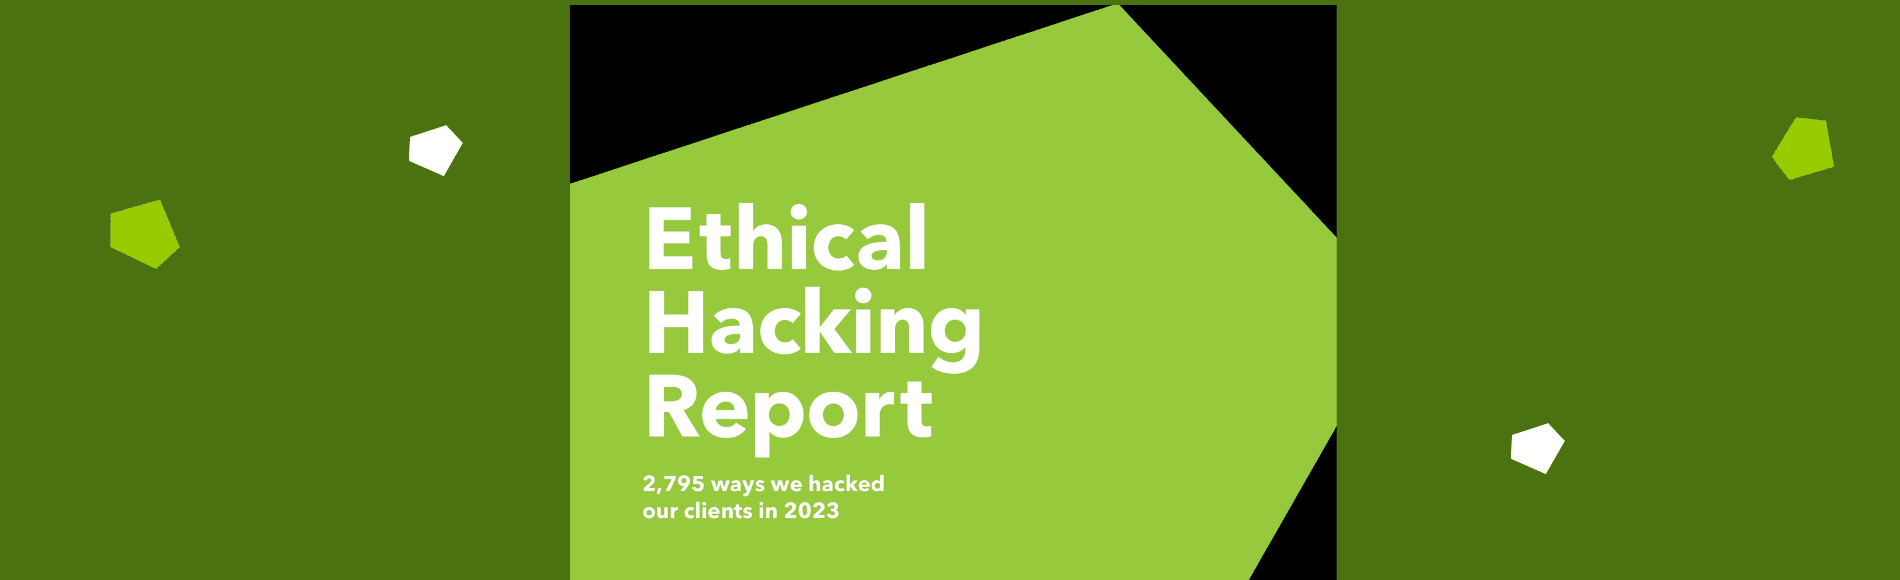 Ethical Hacking Report 2023: Nejzranitelnější systémy jsou Weby, Cloudy a Infrastruktura